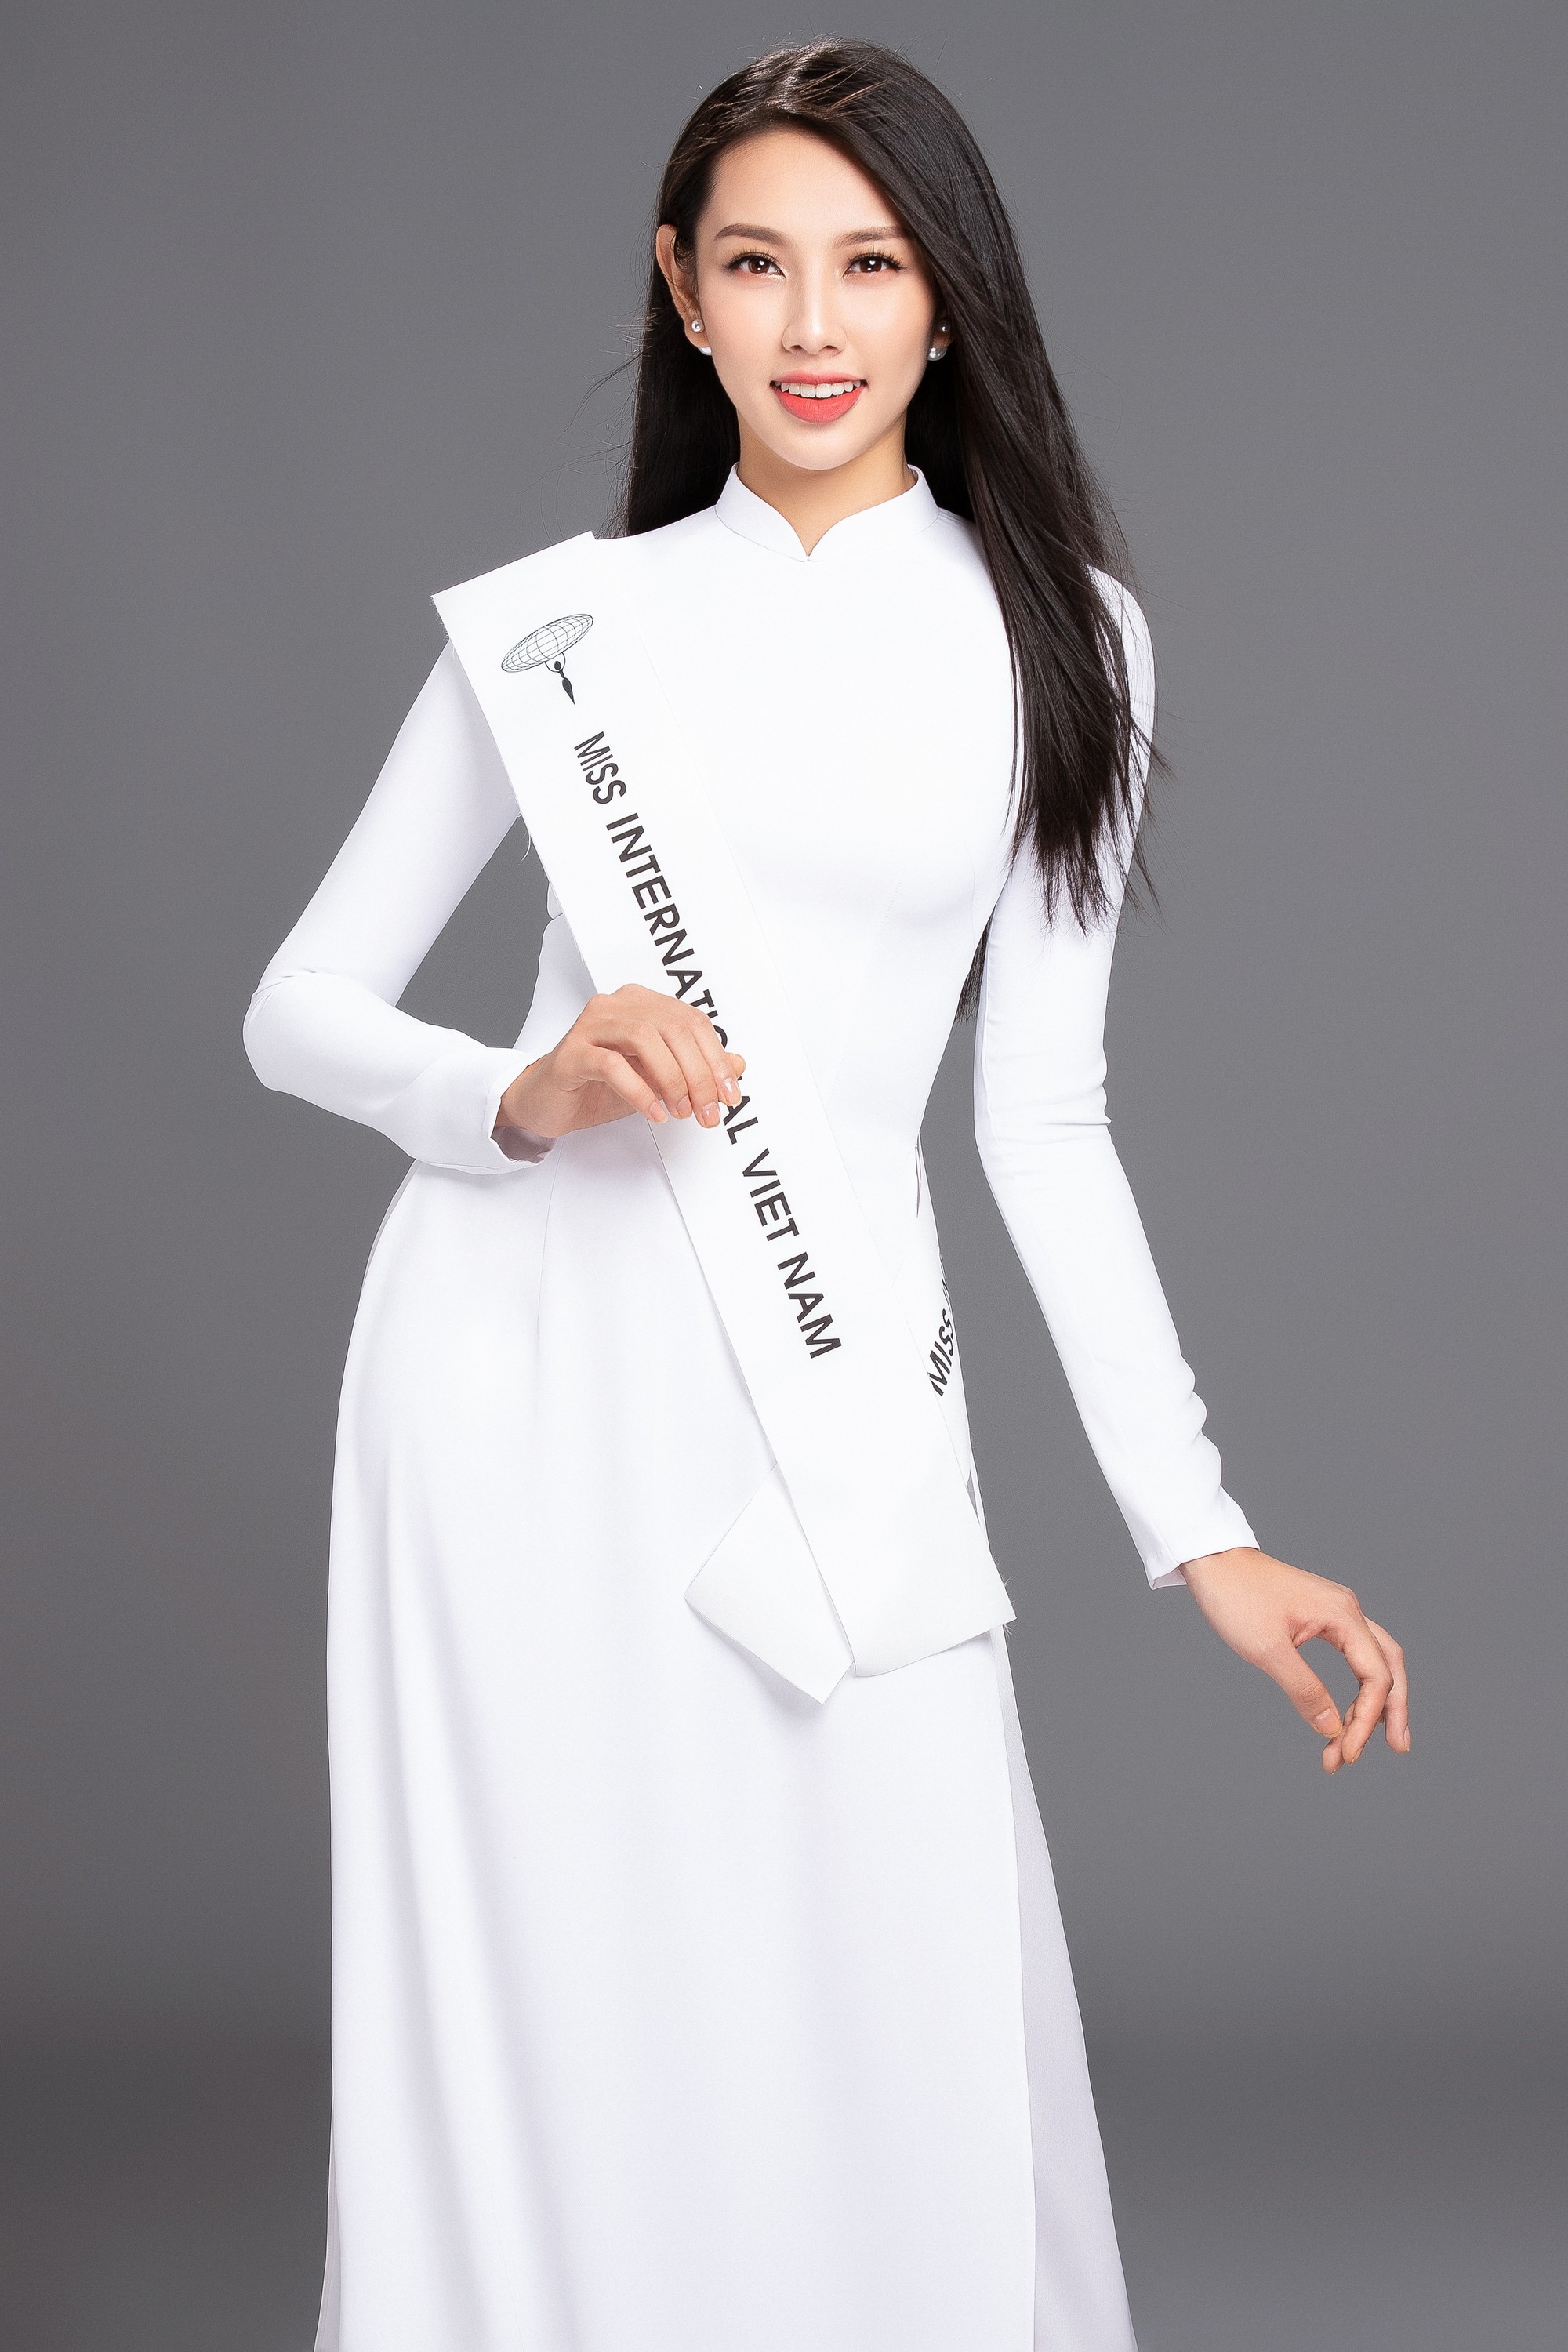 Hoa hậu Nhân ái Nguyễn Thúc Thùy Tiên bất ngờ được cử đi thi Miss International 2018 sau khi Á hậu Thúy An nhập viện